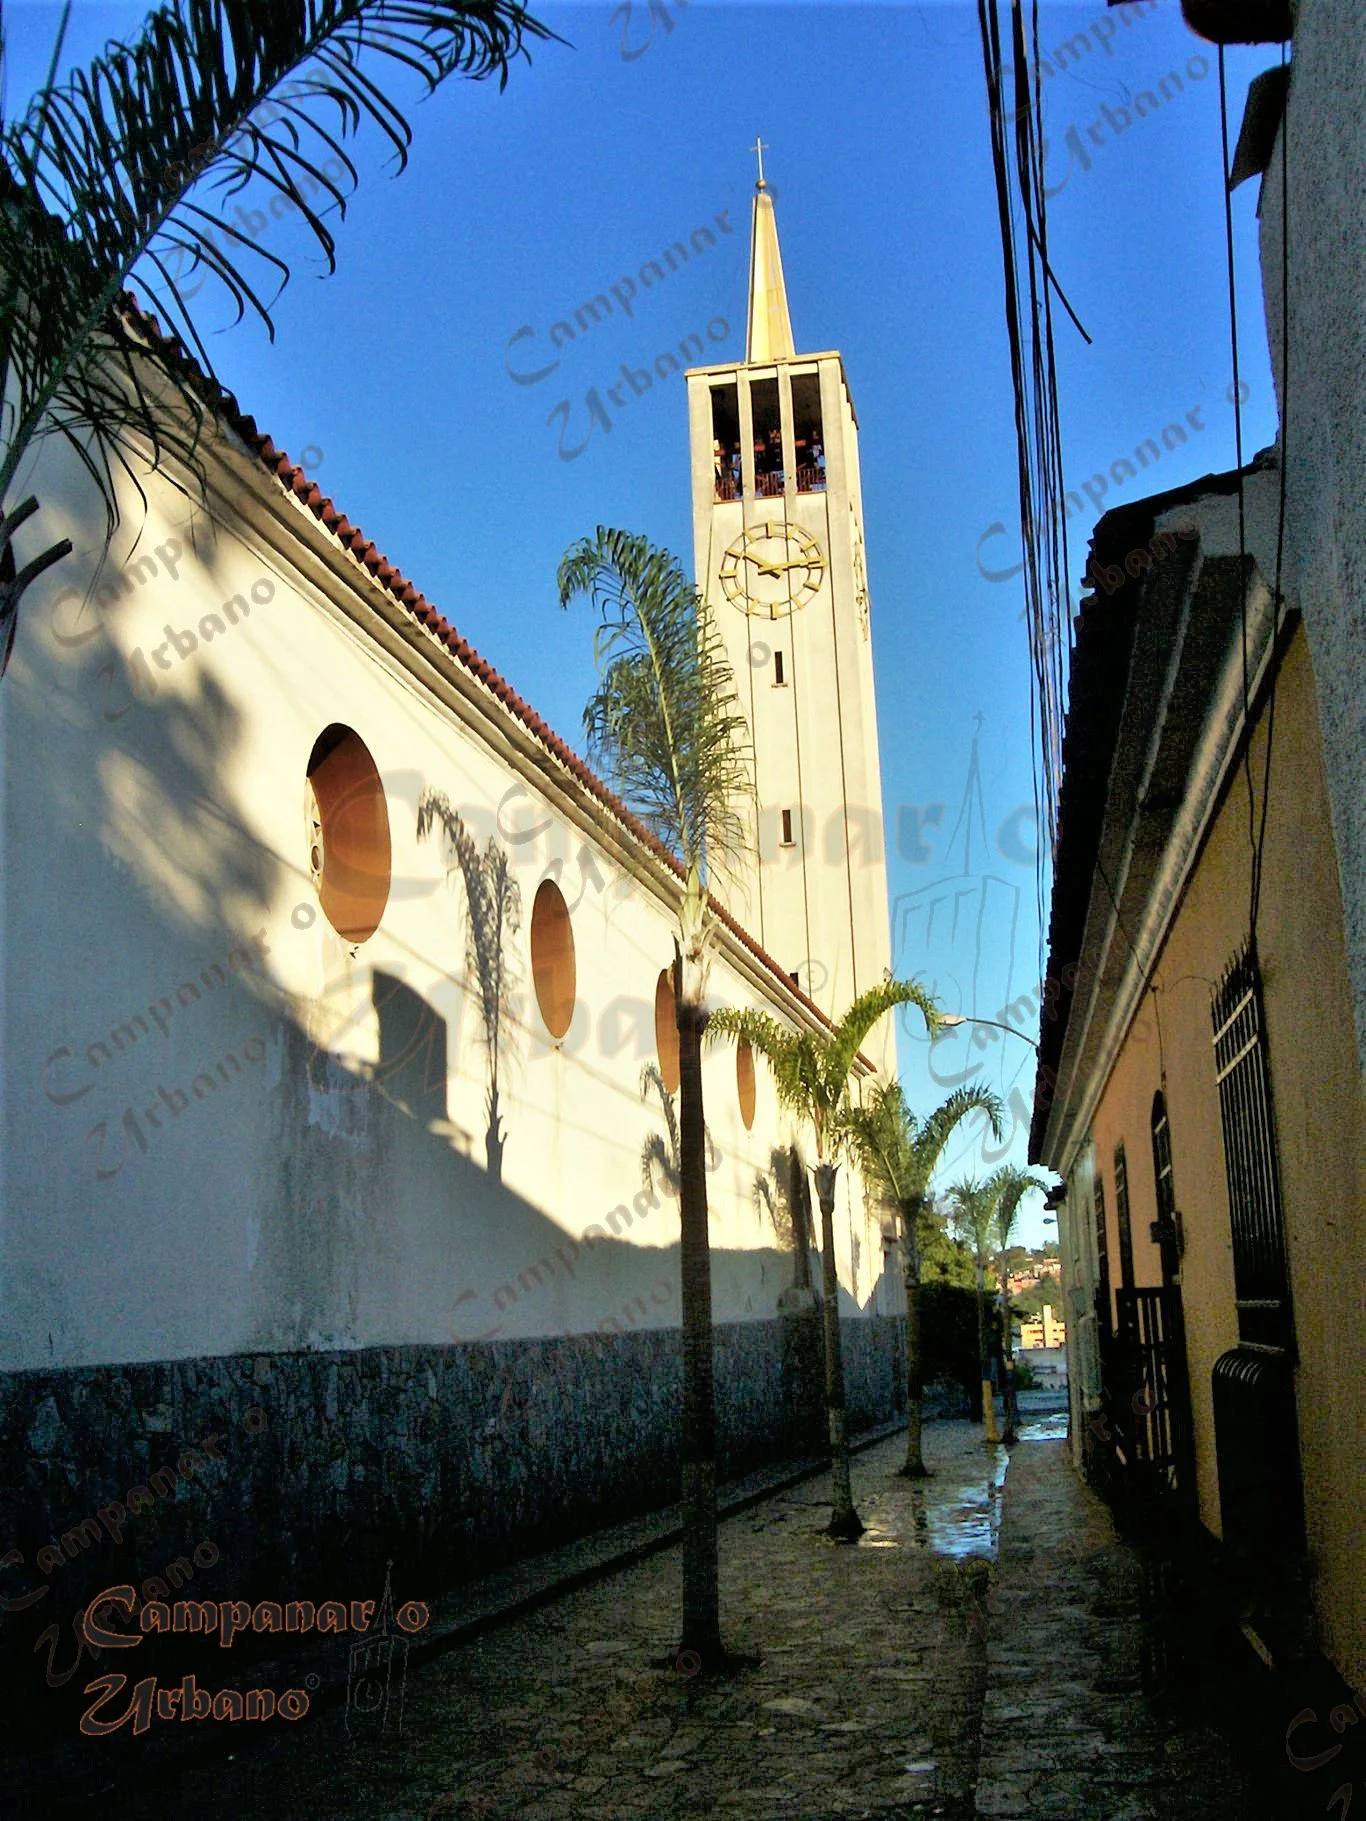 Segmento de la antigua calle Real de Guarenas, hoy Boulevard. Fotografía del año 2010.